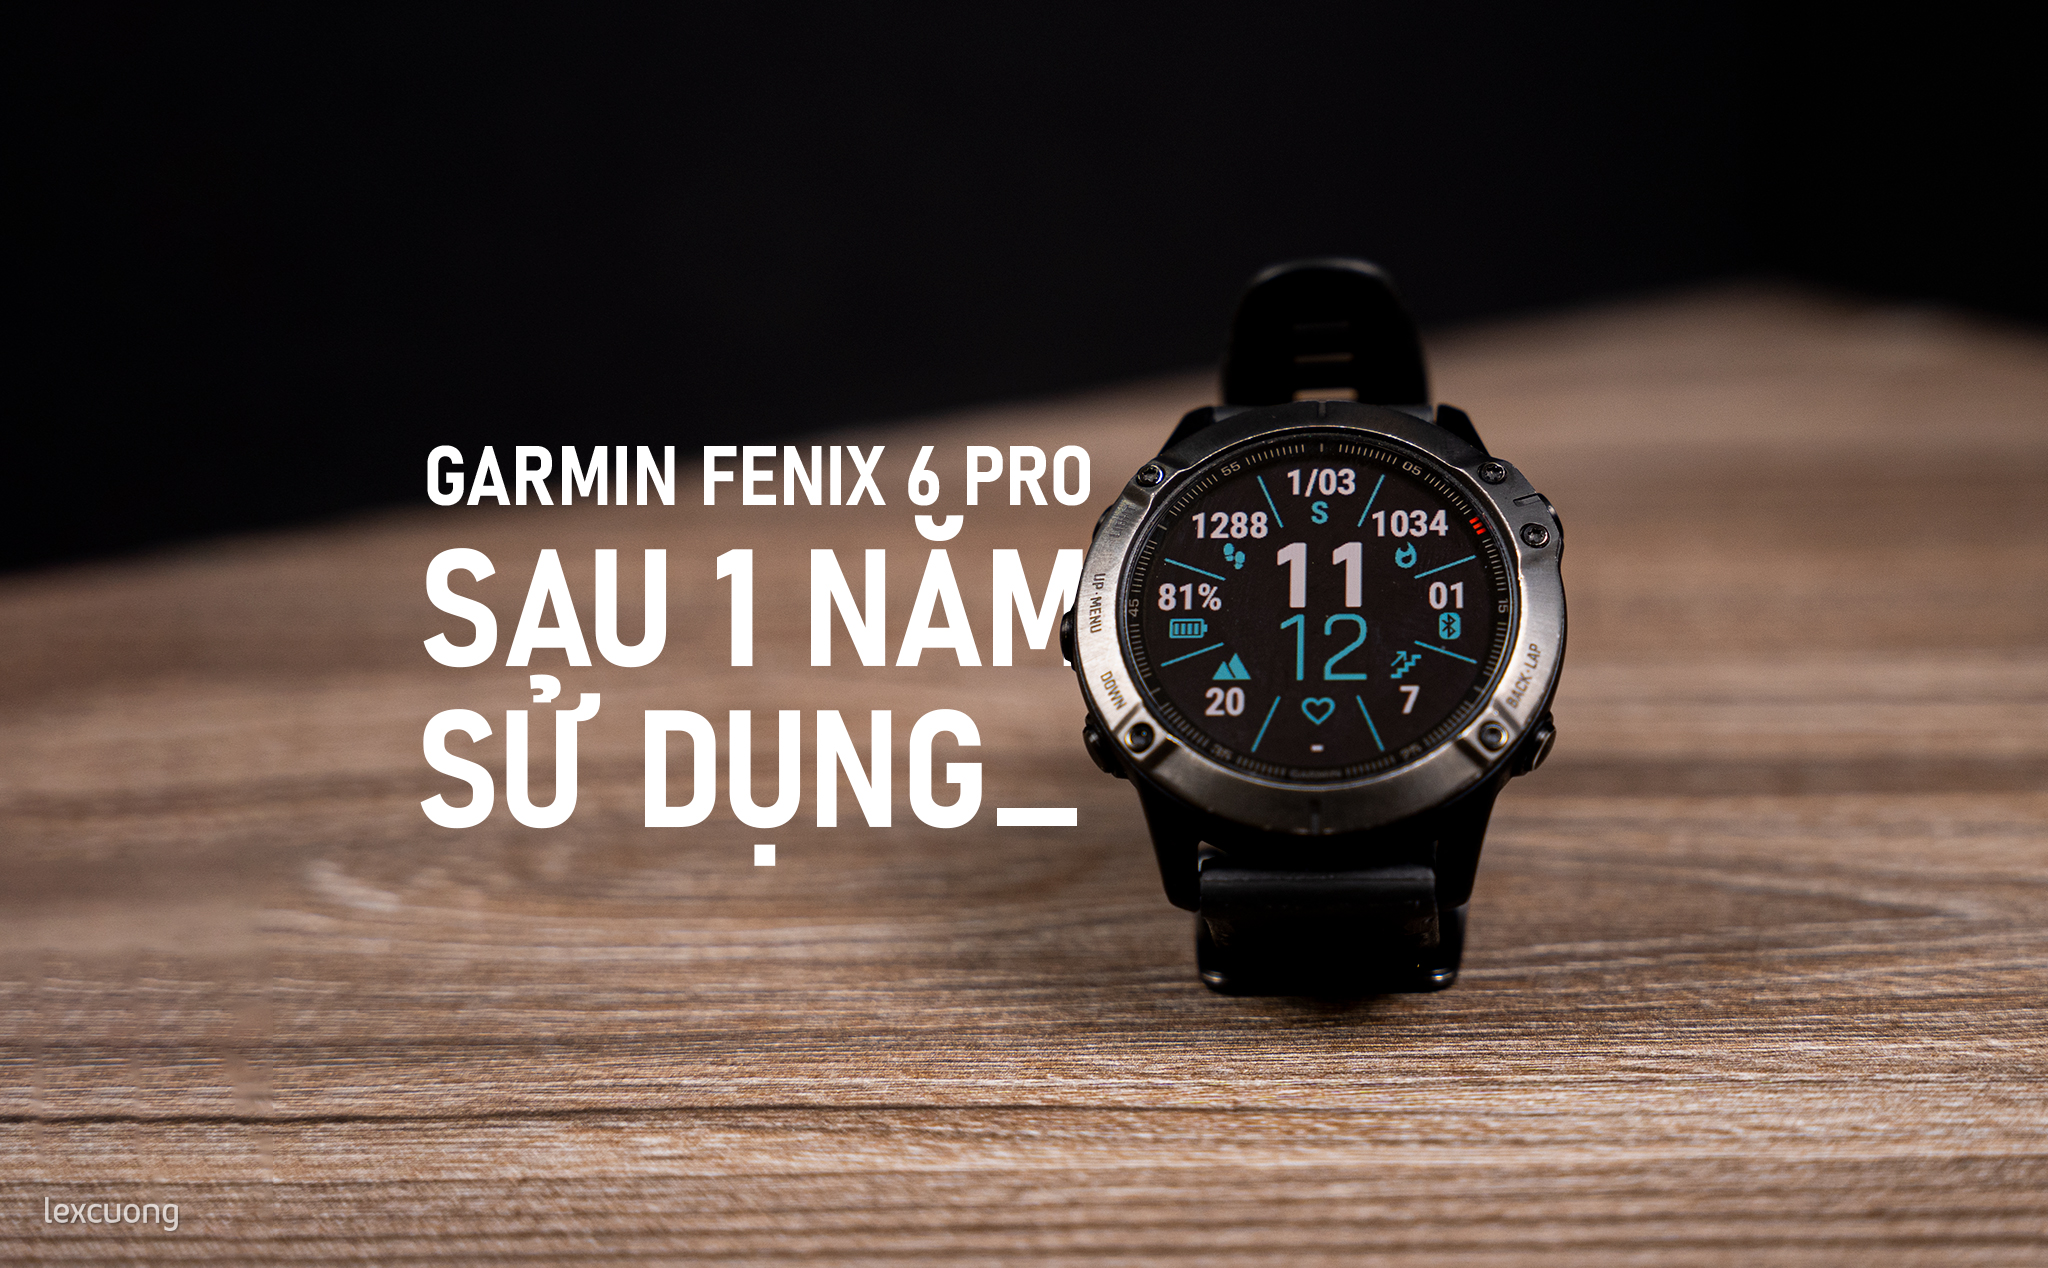 Garmin Fenix 6 Pro sau một năm sử dụng